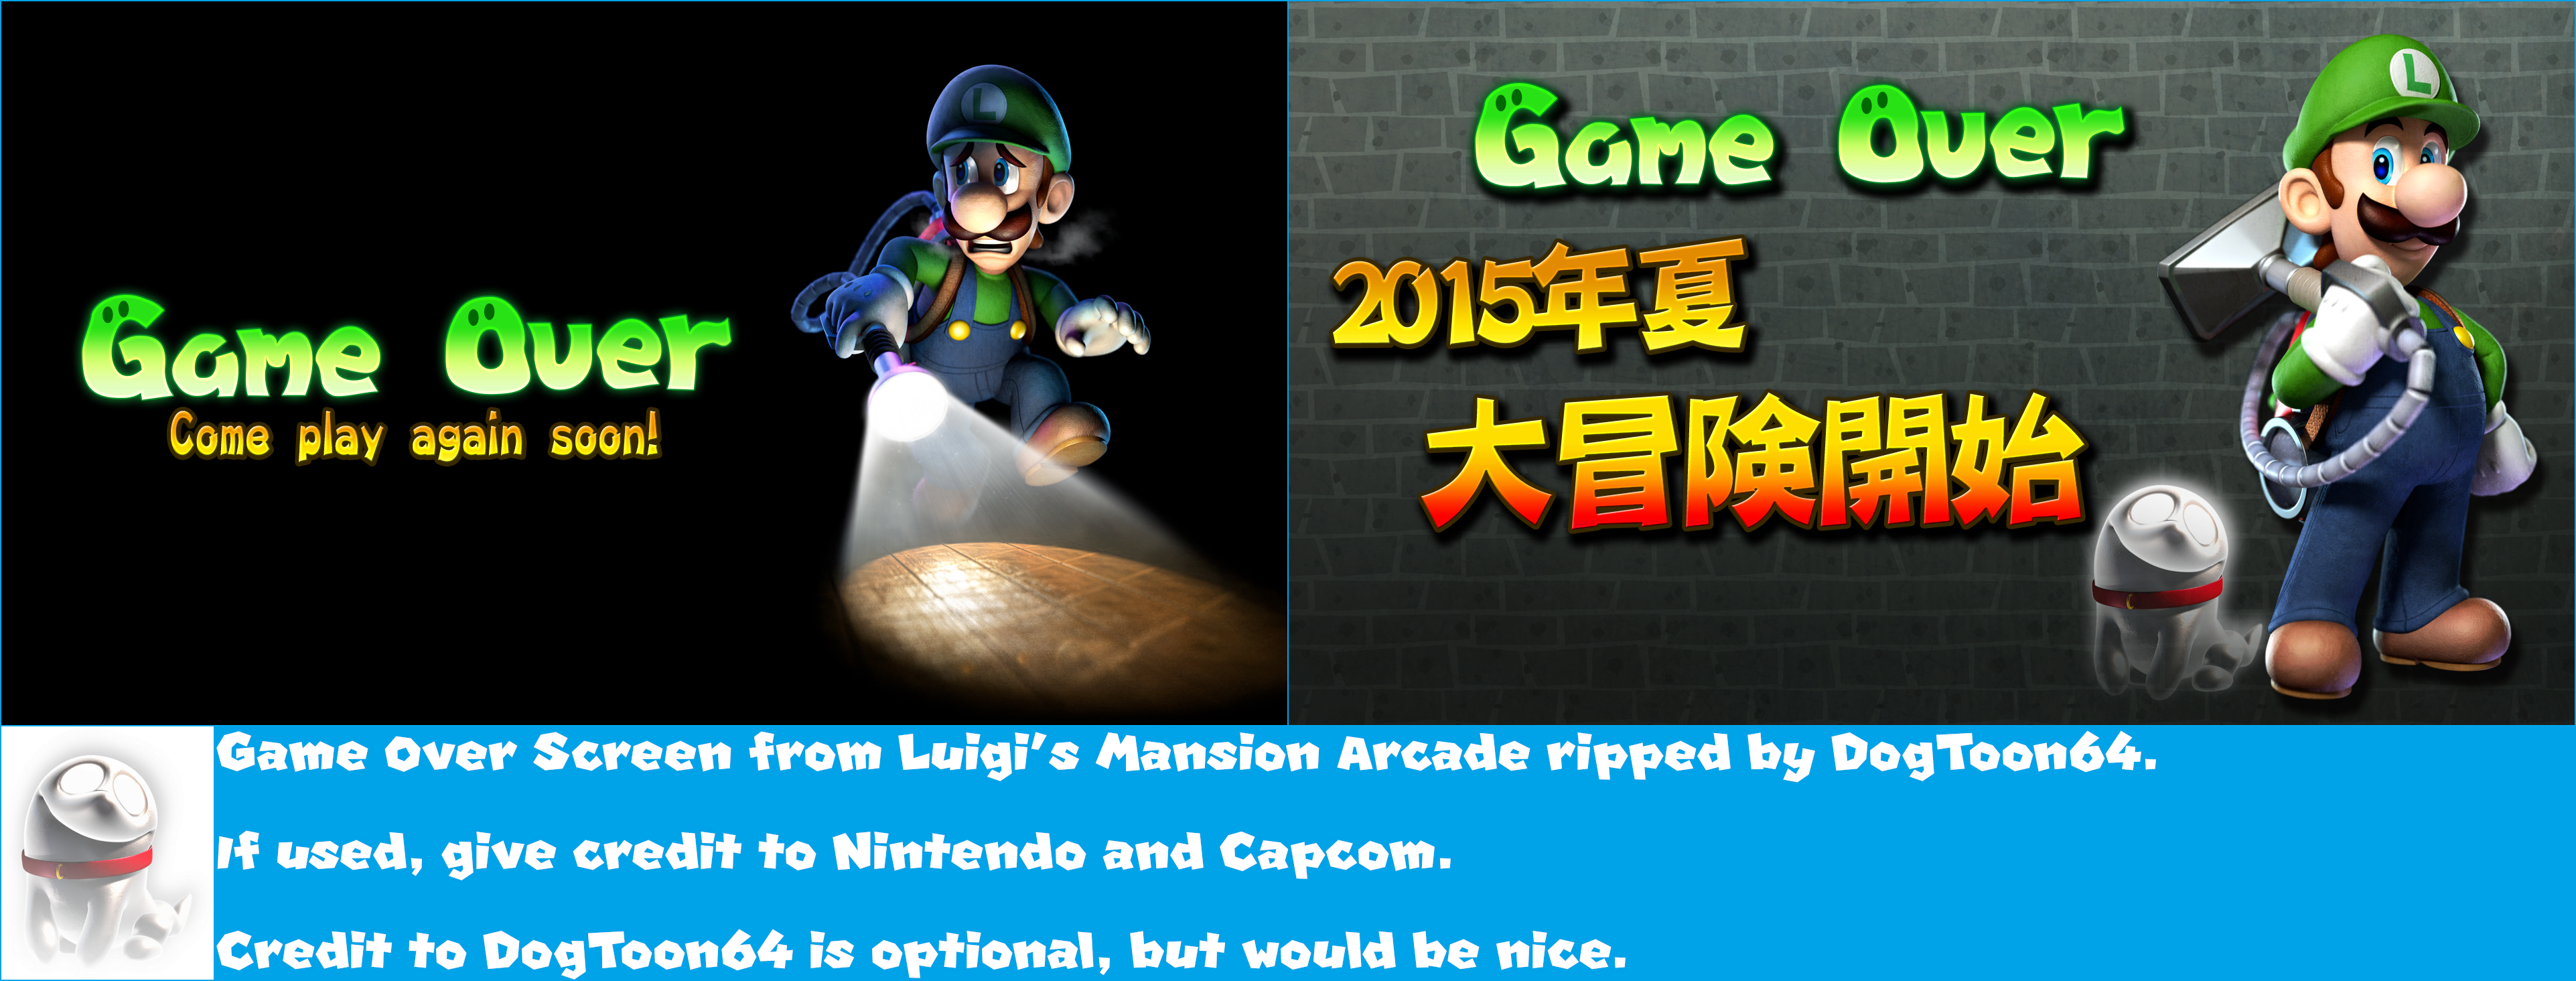 Luigi's Mansion Arcade - Game Over Screen